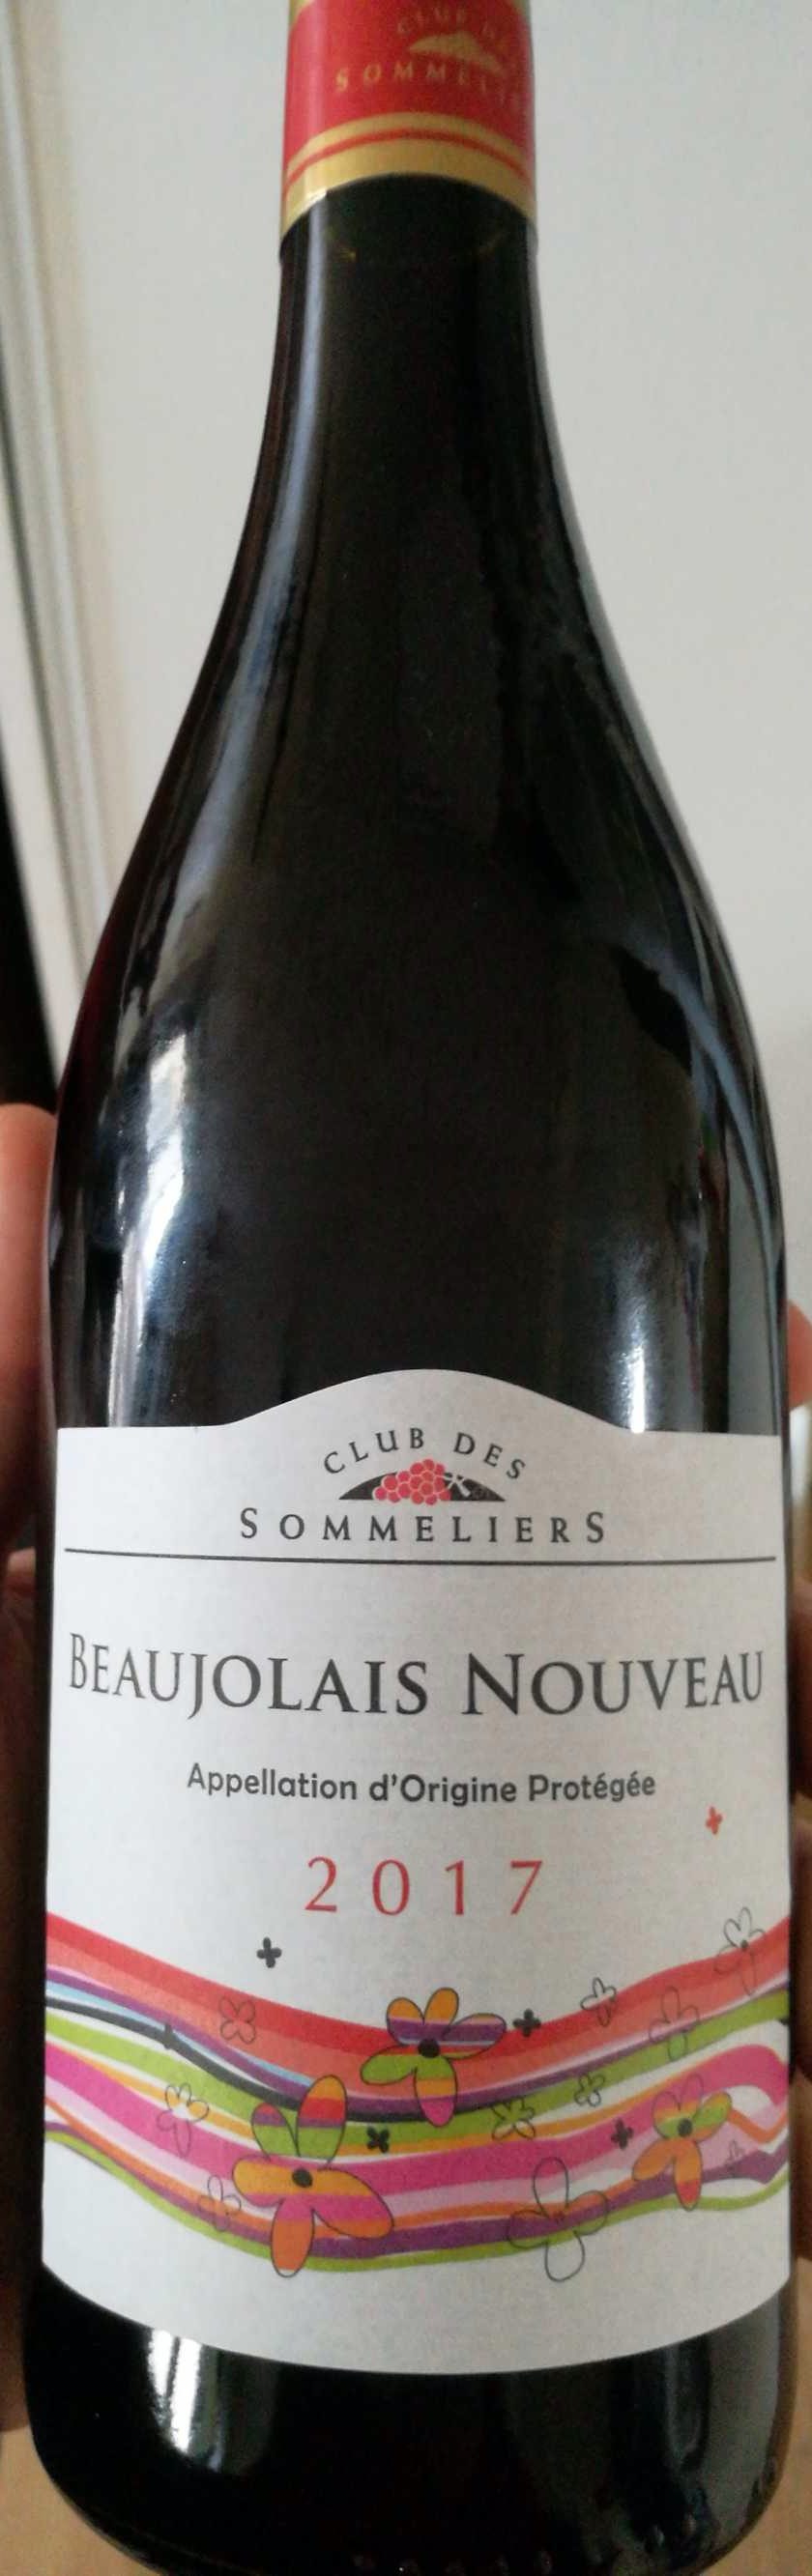 Beaujolais Nouveau 2017 - Product - fr